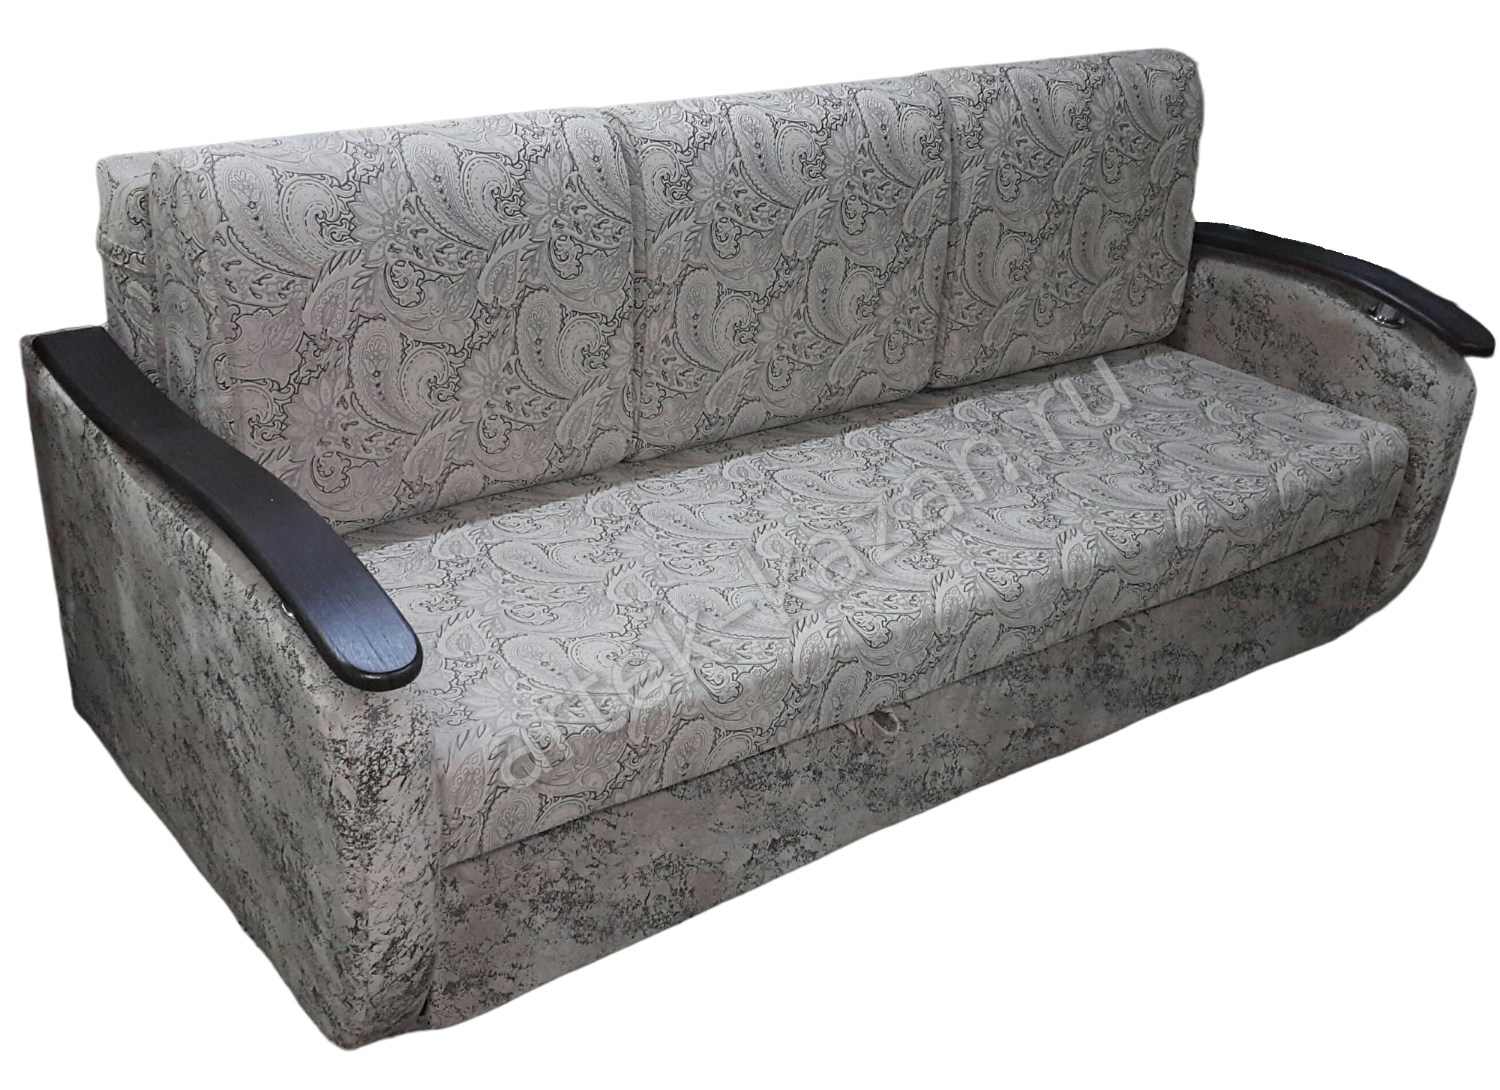 Мини диван на выкатном механизме Миник фото № 27. Купить недорогой диван по низкой цене от производителя можно у нас.